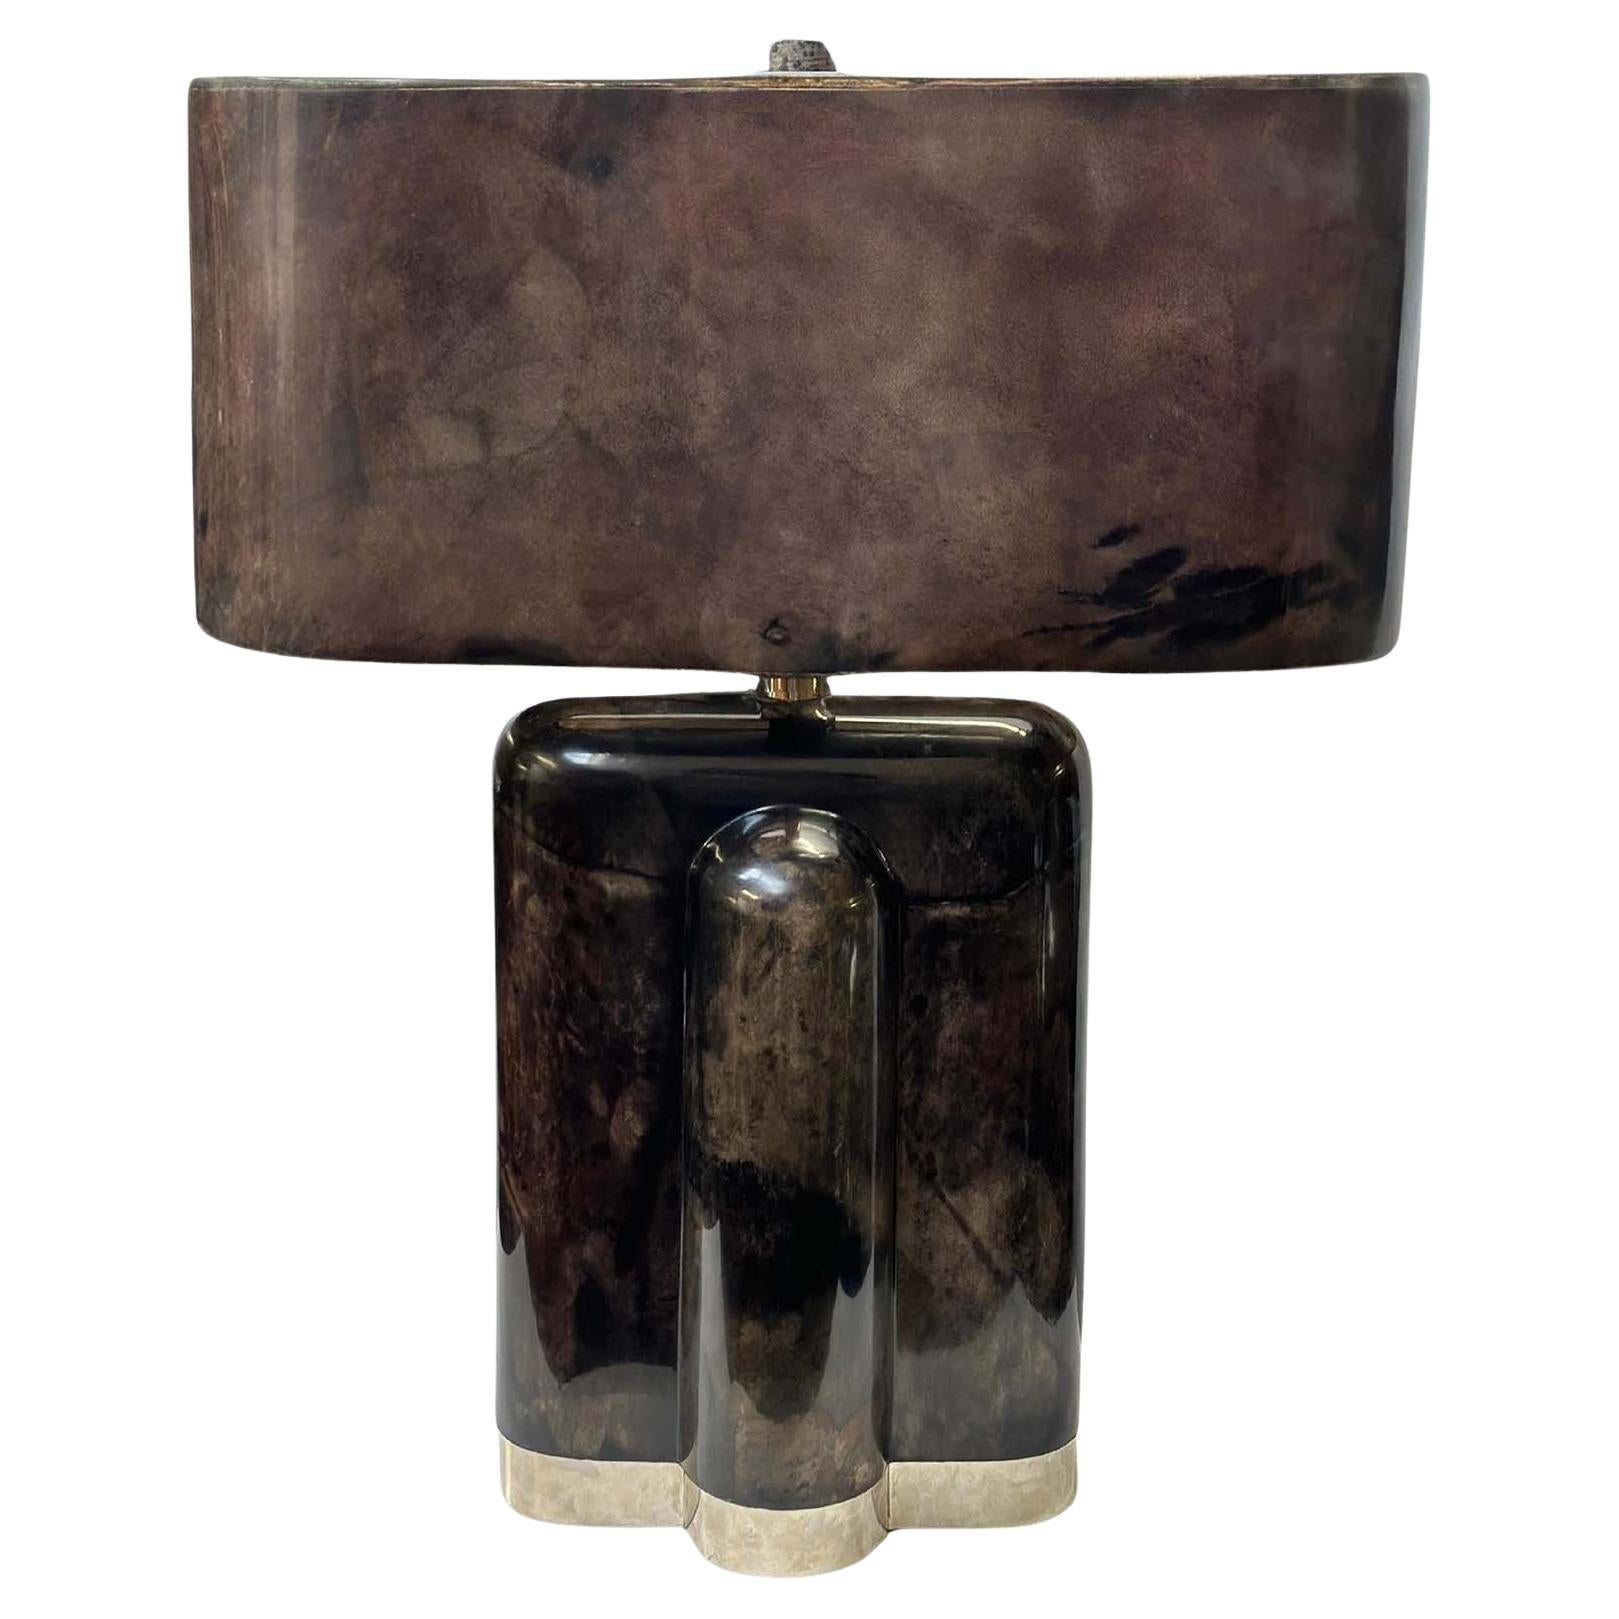 Vintage-Tischlampe aus Ziegenleder und Pergament, ca. 2005